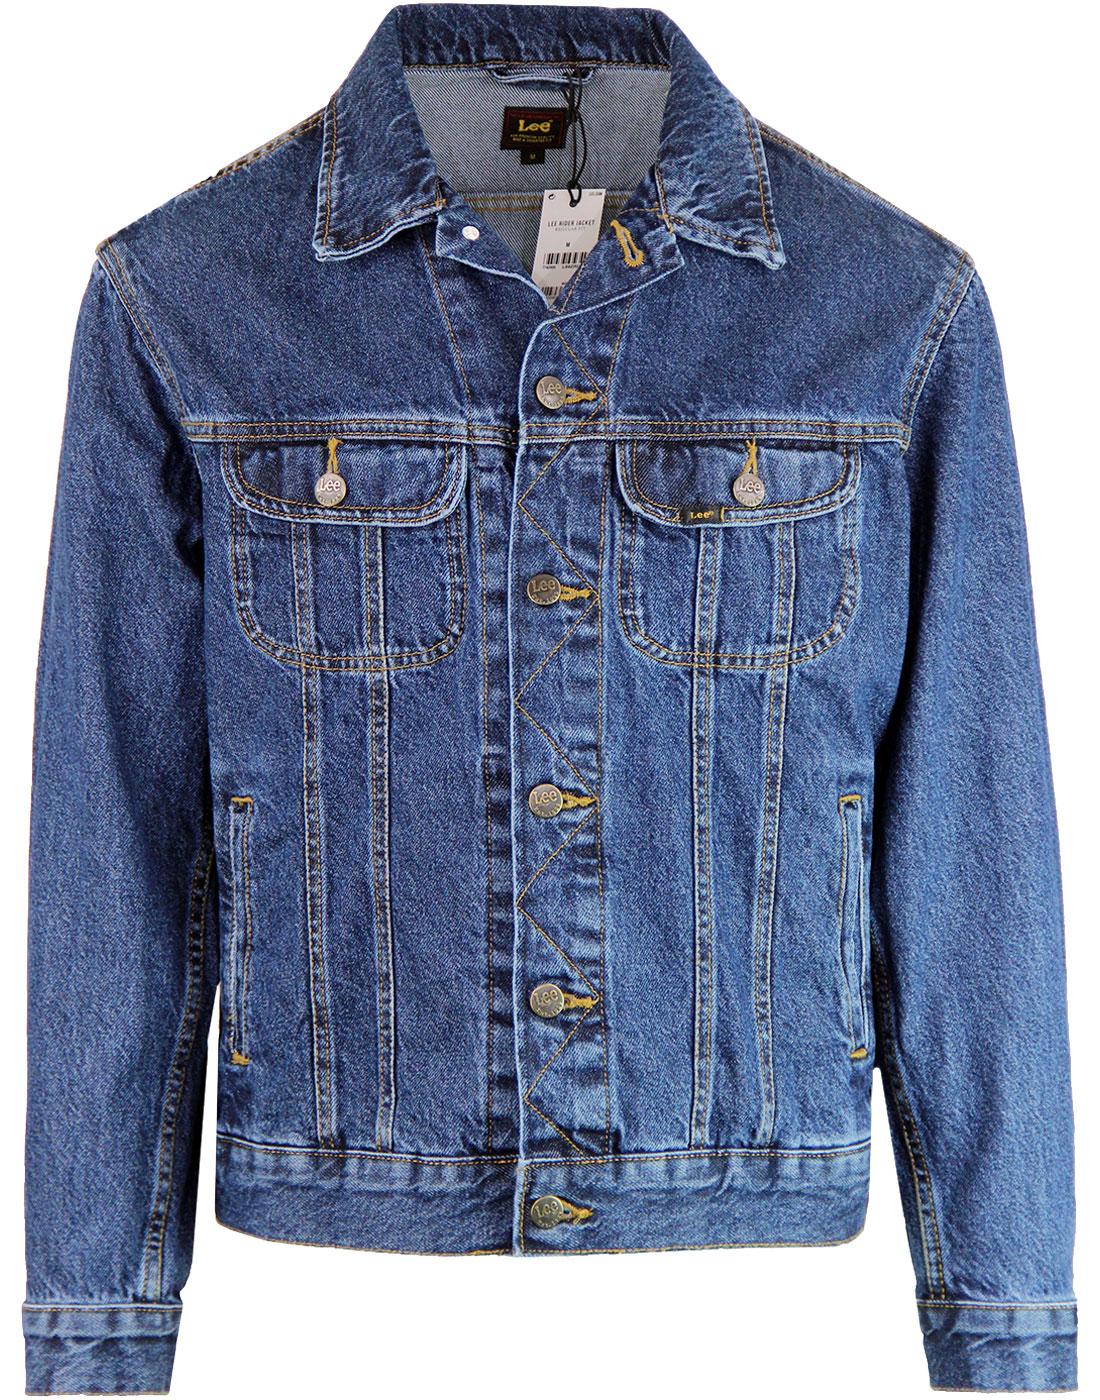 Lee Men's Rider Denim Jacket, Blue Bird MID Worn, S : Amazon.co.uk: Fashion